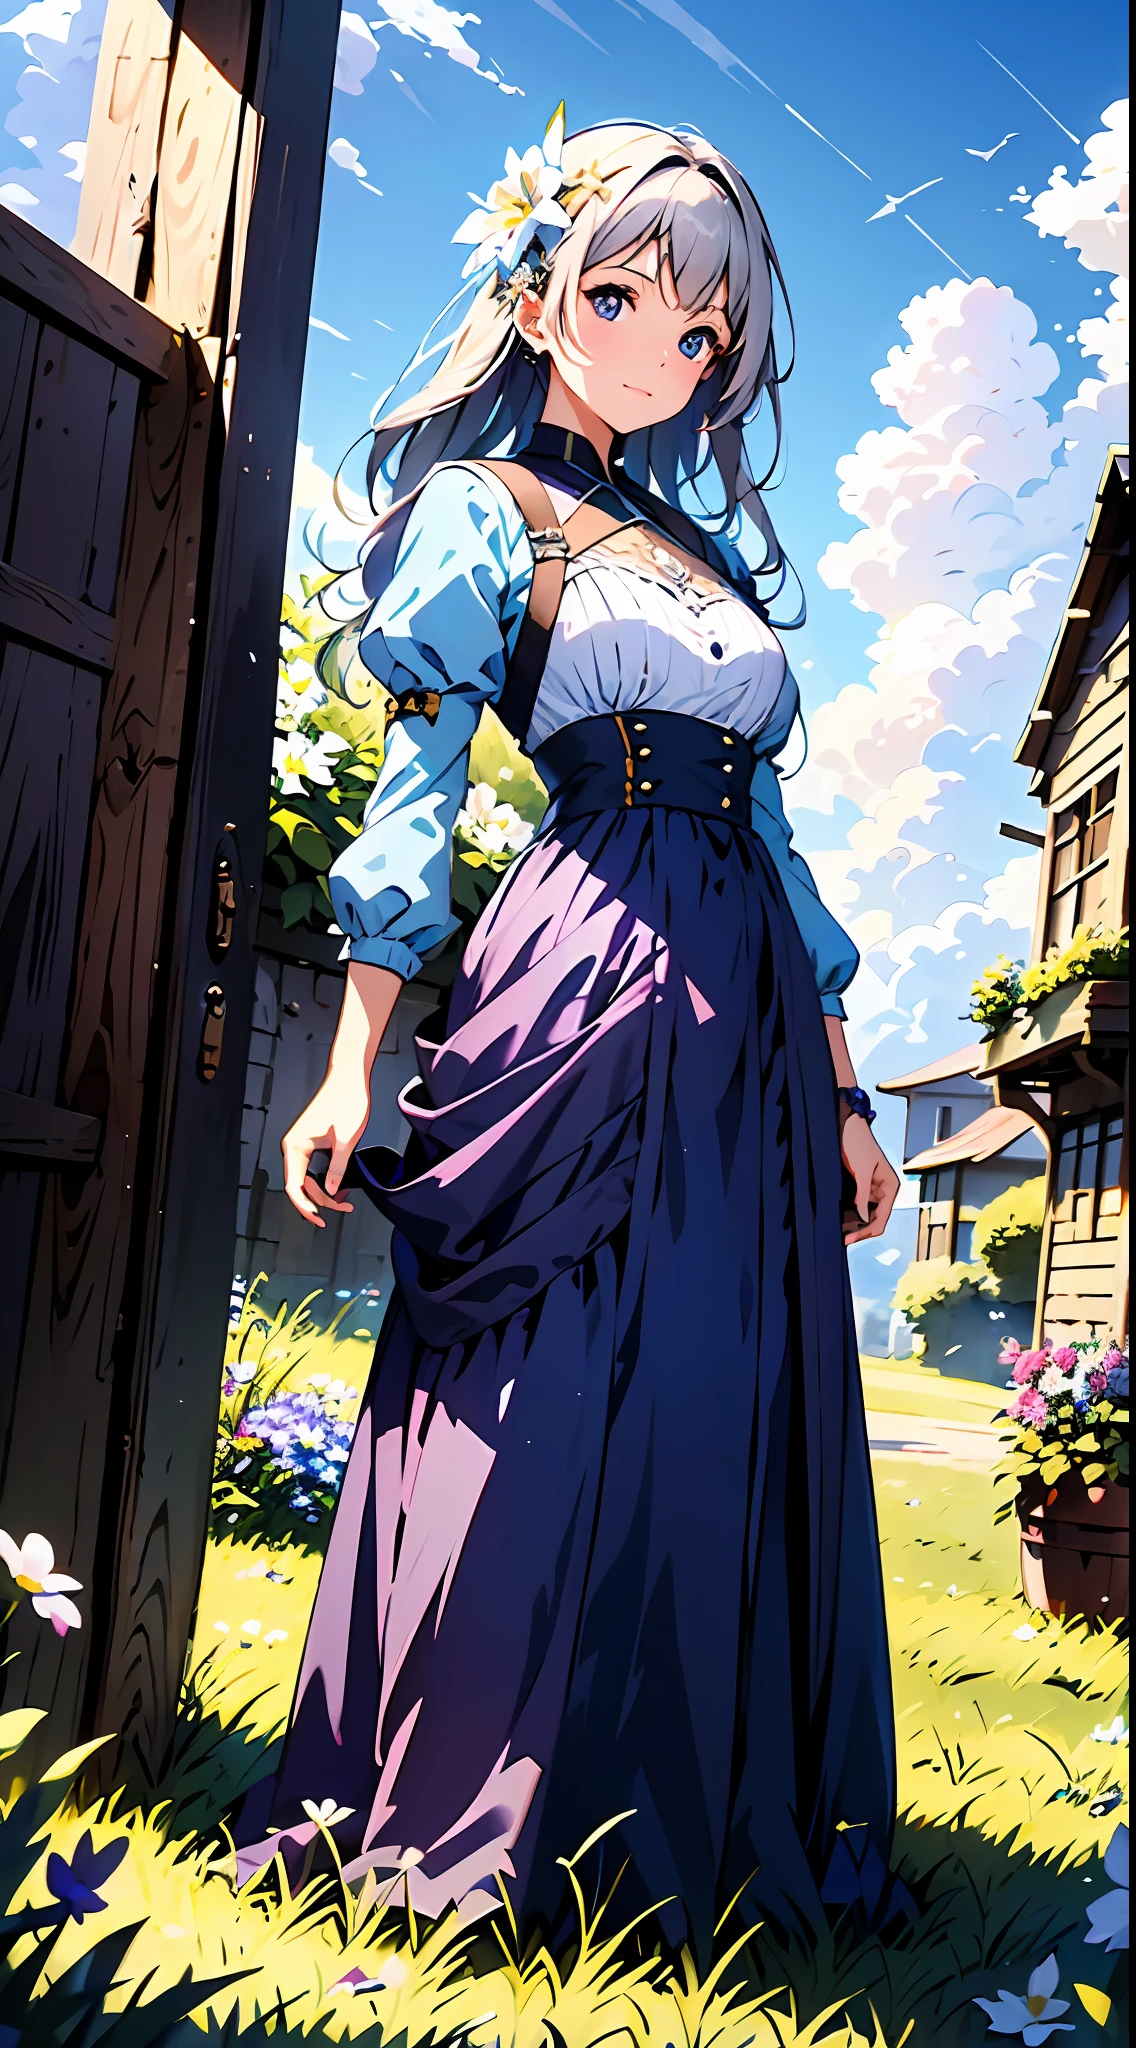 Eine Frau in einem lila Kleid，Blauer Himmel und Wolken im Hintergrund, trägt ein weißes Kleid，Es sind Blumen darauf, Art germ, Rosla globale Beleuchtung, ein detailreiches Gemälde, Fantasy-Kunst